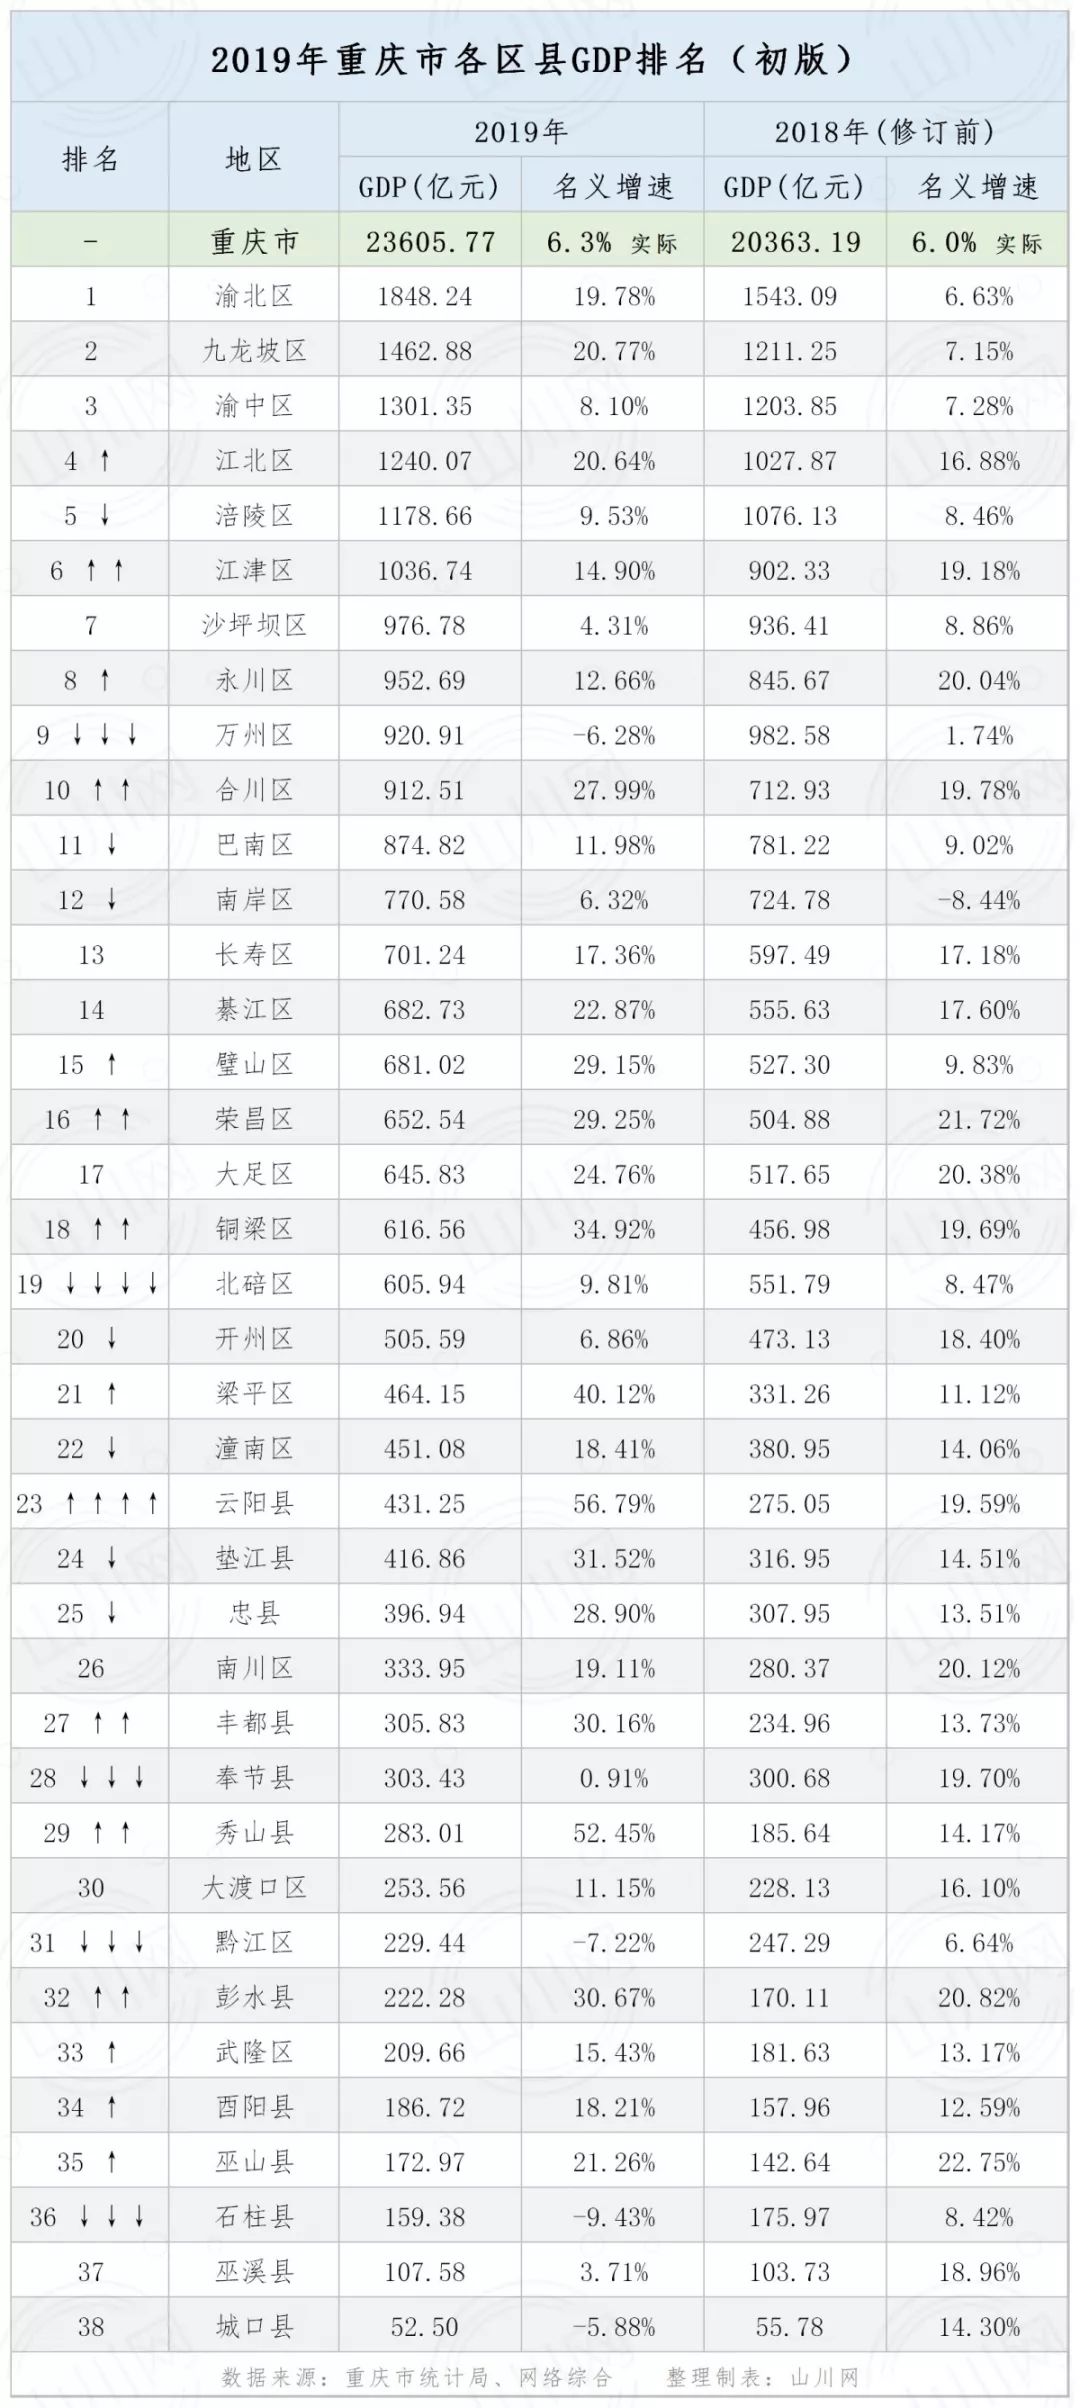 但由于在2019年度,重庆市下辖的38个区县中,有多达27个区县的排名情况